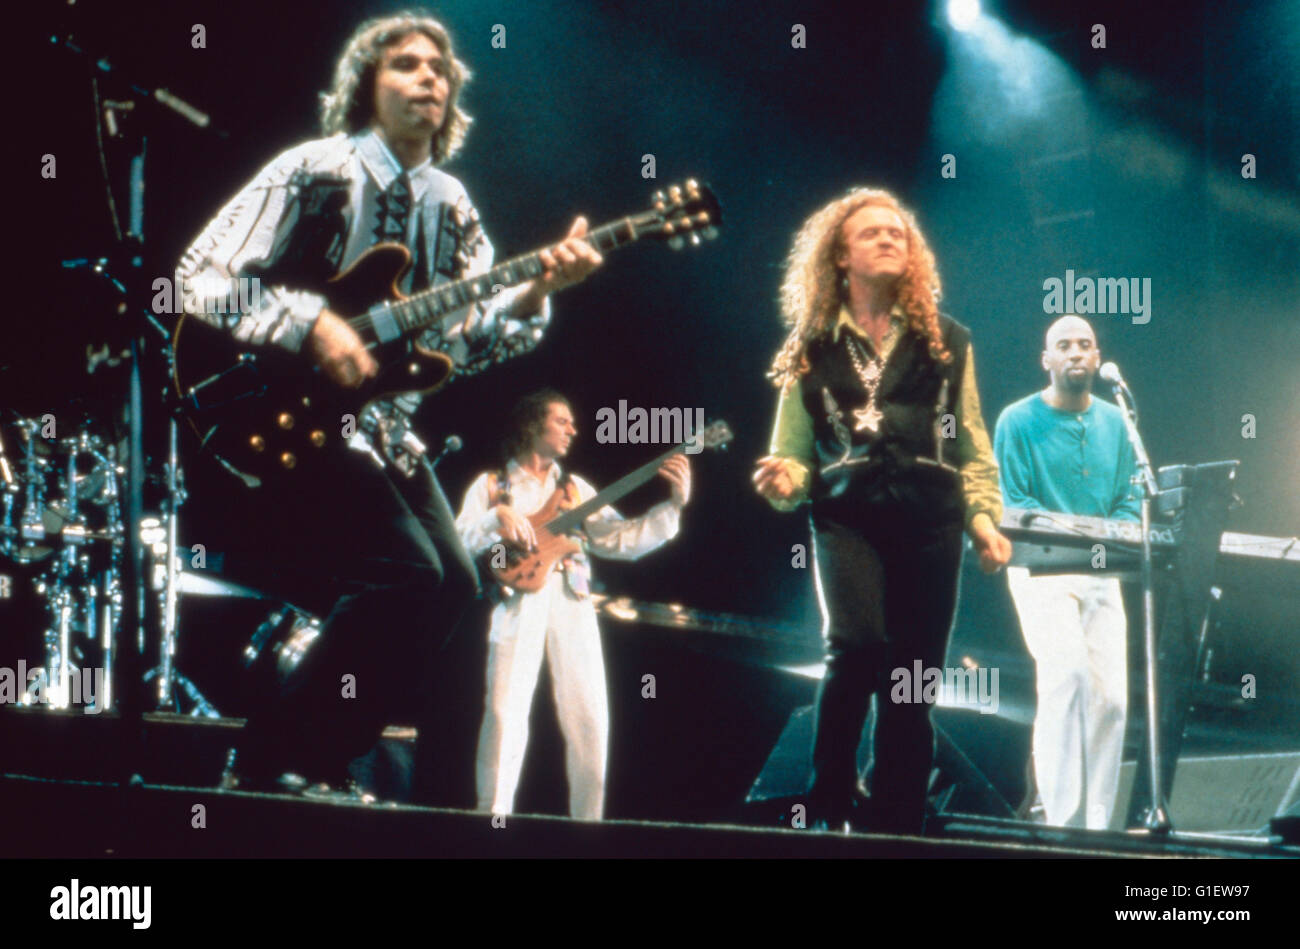 Sterben Sie britischen Band "Simply Red", 1990er Jahre. Britische band "Simply Red", der 1990er Jahre. Stockfoto